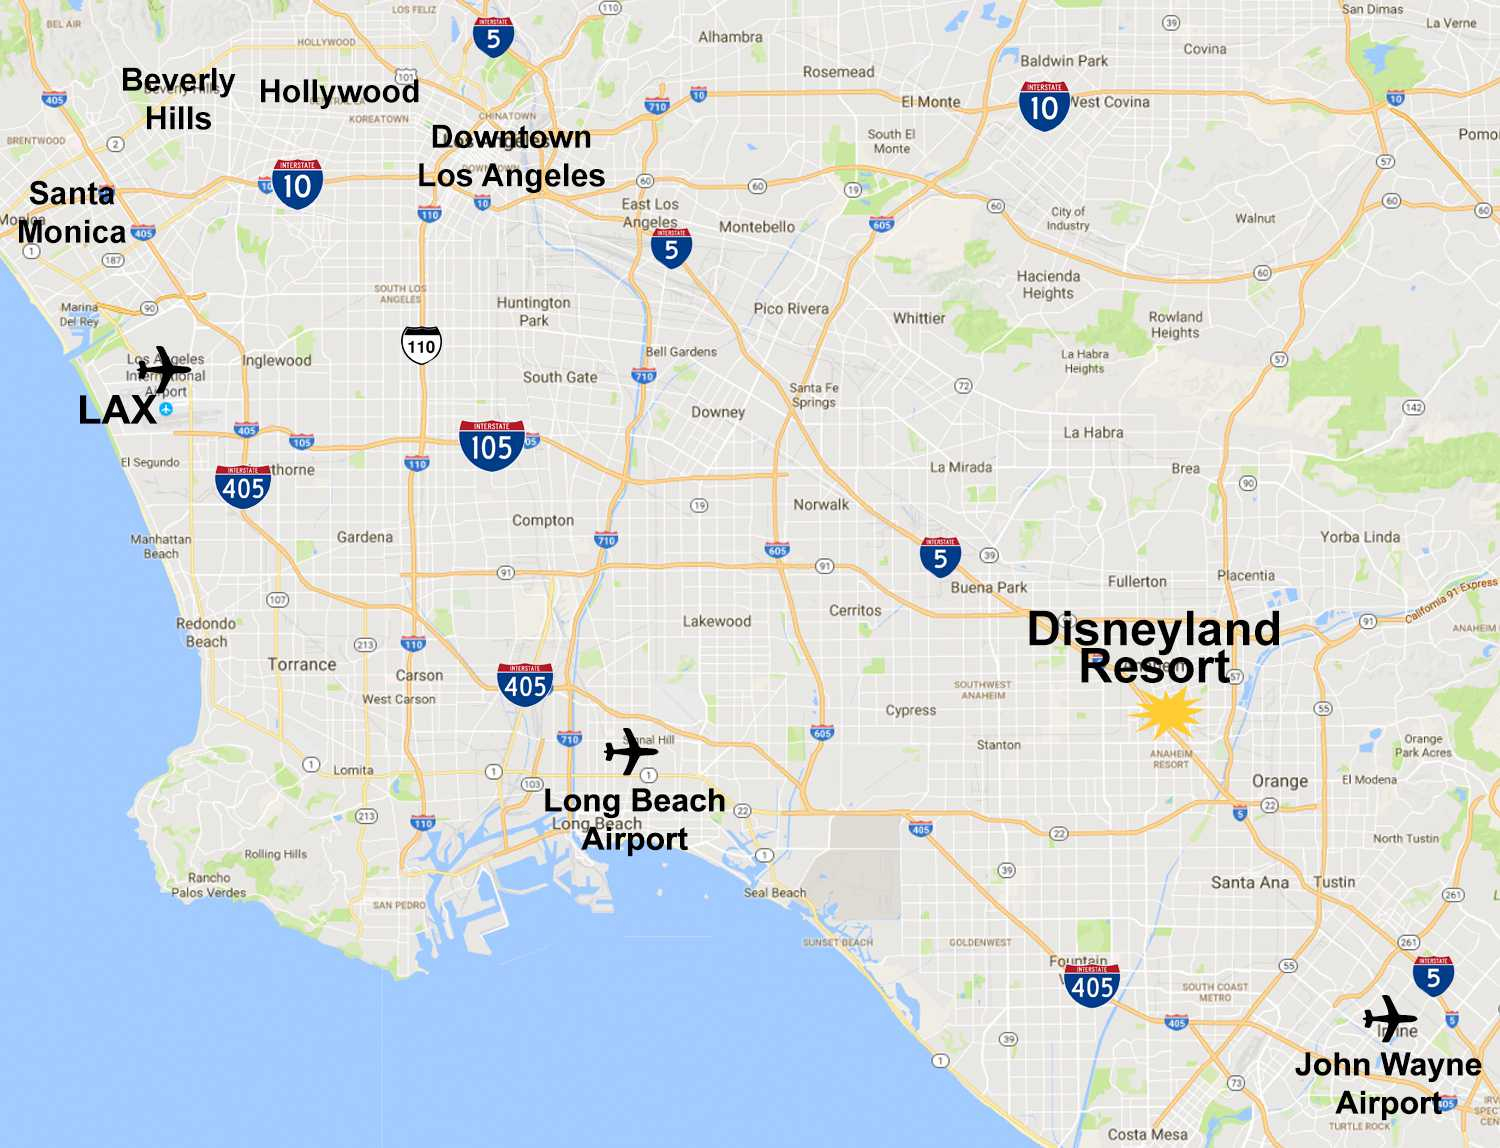 Maps Of The Disneyland Resort - Anaheim California Google Maps